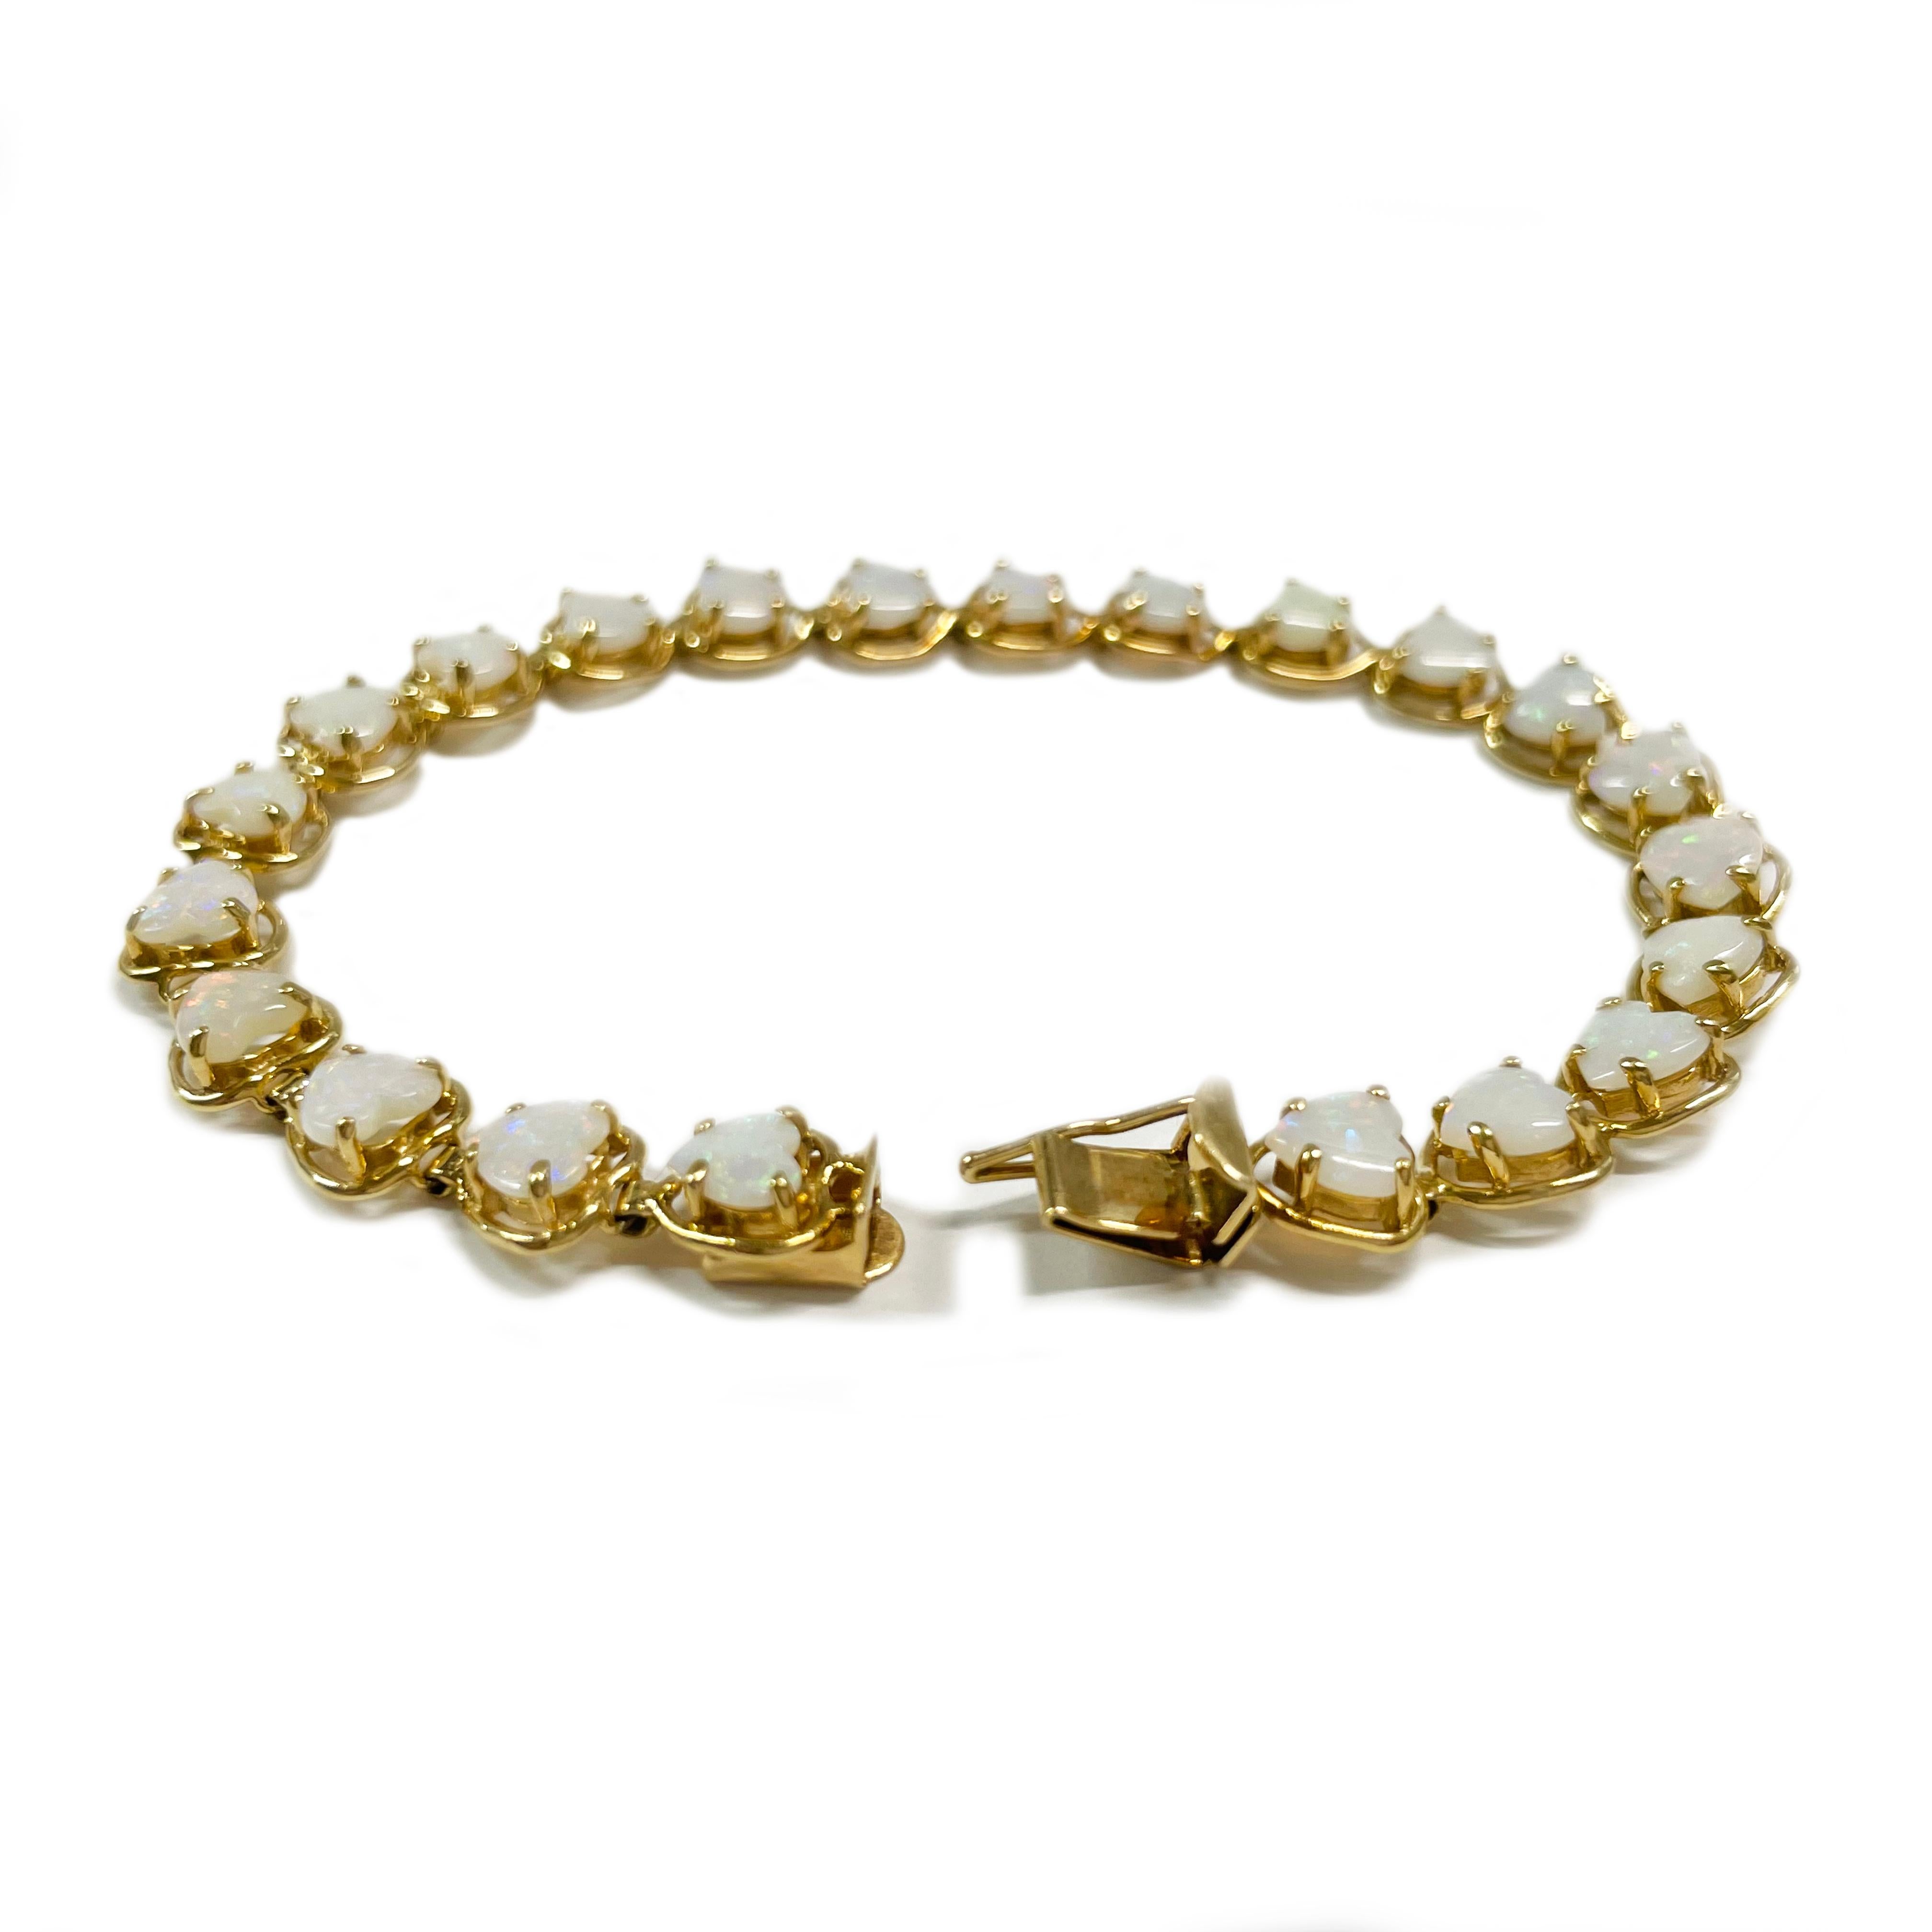 Bracelet en or jaune 14 carats avec cœur en opale. Ce charmant bracelet à maillons des années 1980 contient vingt-deux opales en forme de cœur serties dans un chaton ouvert. Les cœurs en opale mesurent 5 x 4,8 mm et le bracelet est d'une longueur de